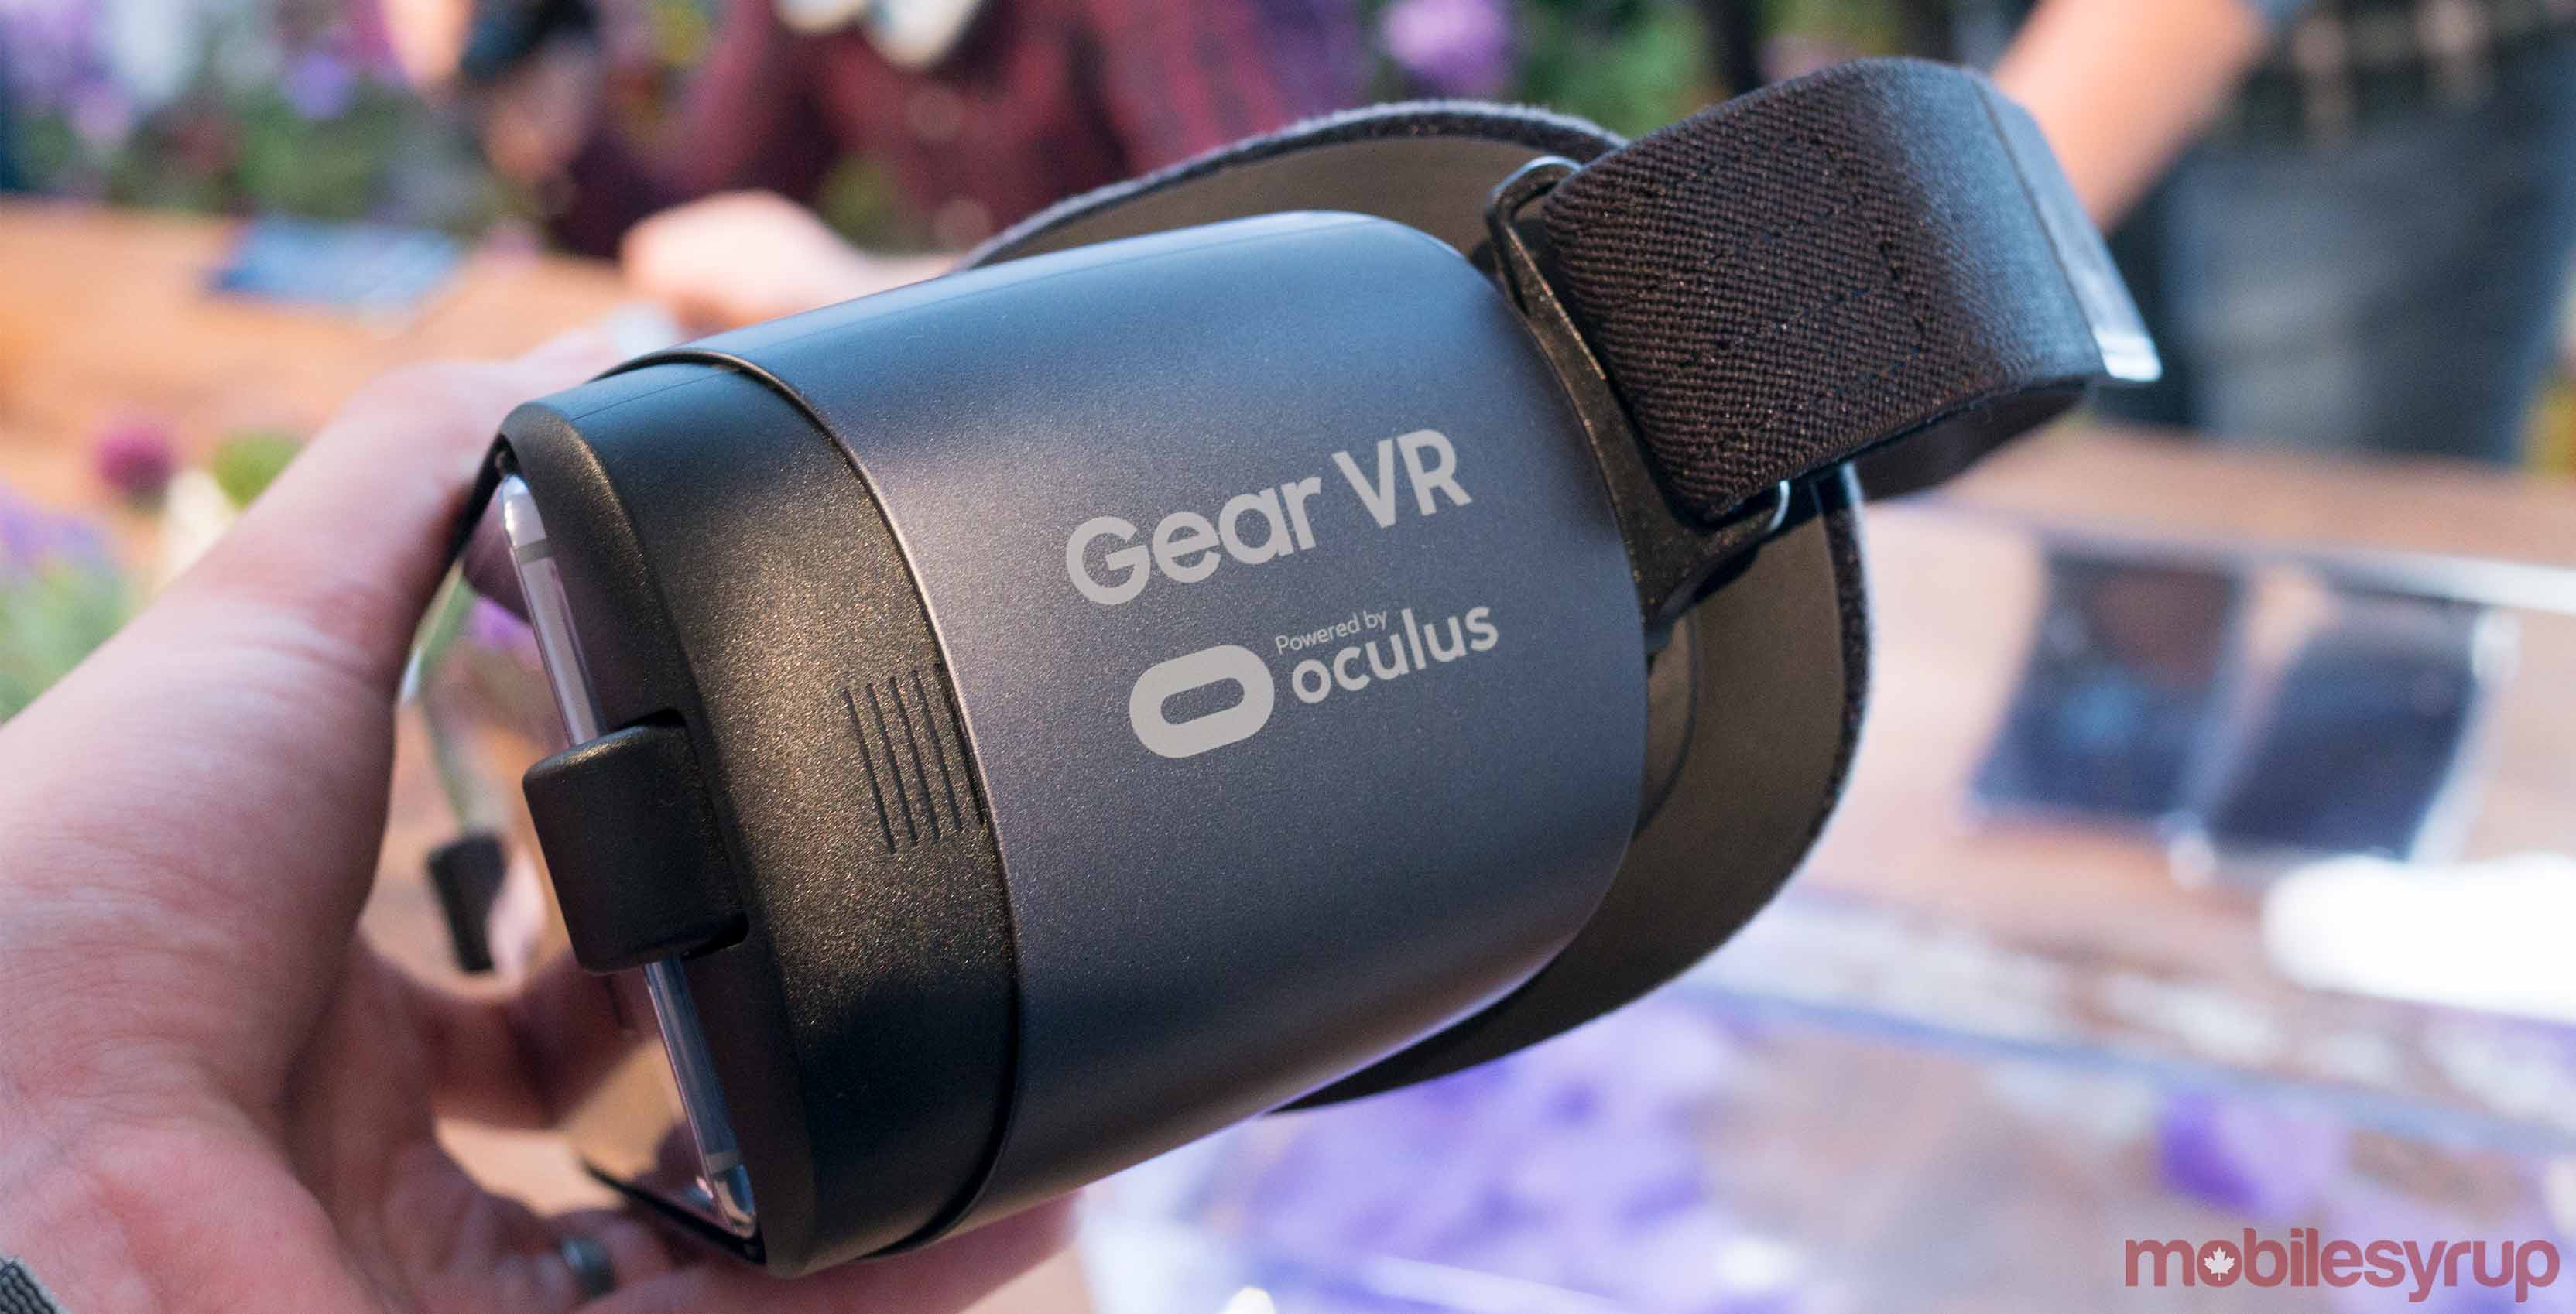 Samsung Gear VR in hand